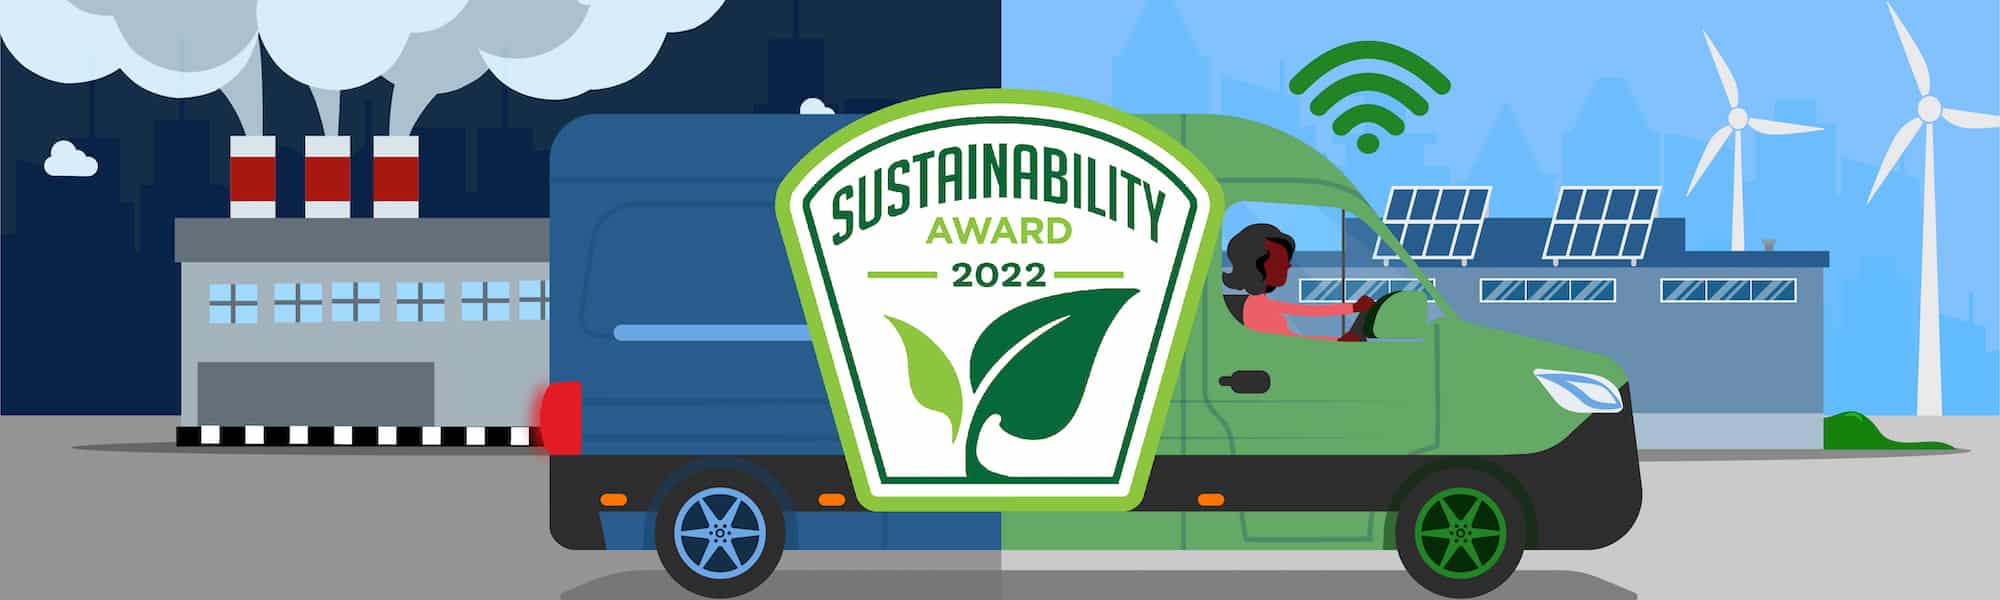 2022 Sustainability Award